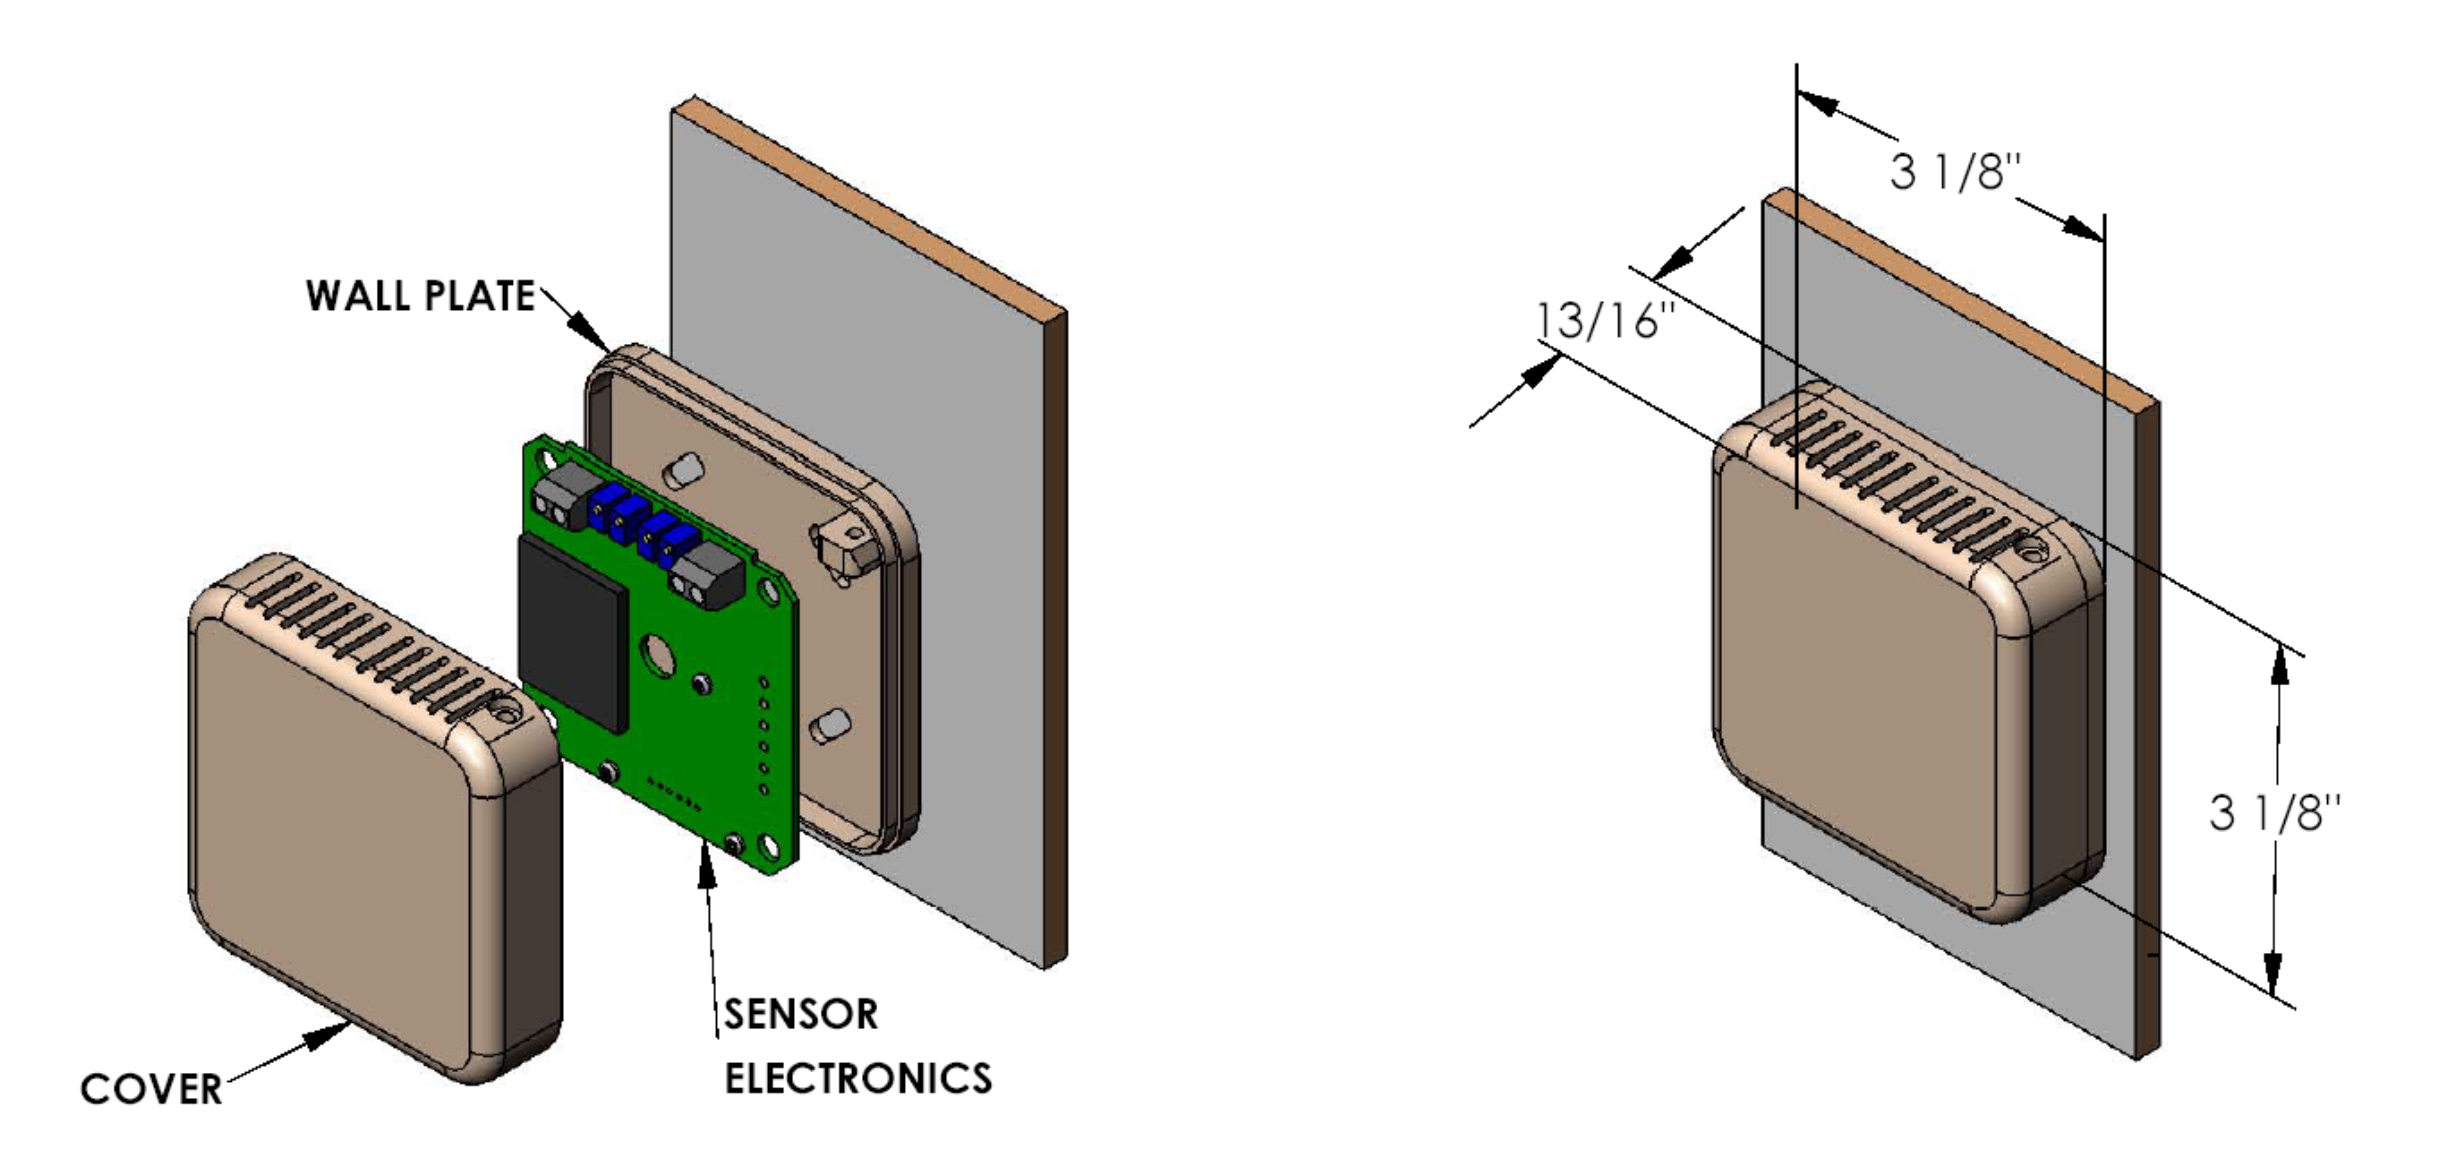 Wall mount interior HVAC temperature sensor R201 